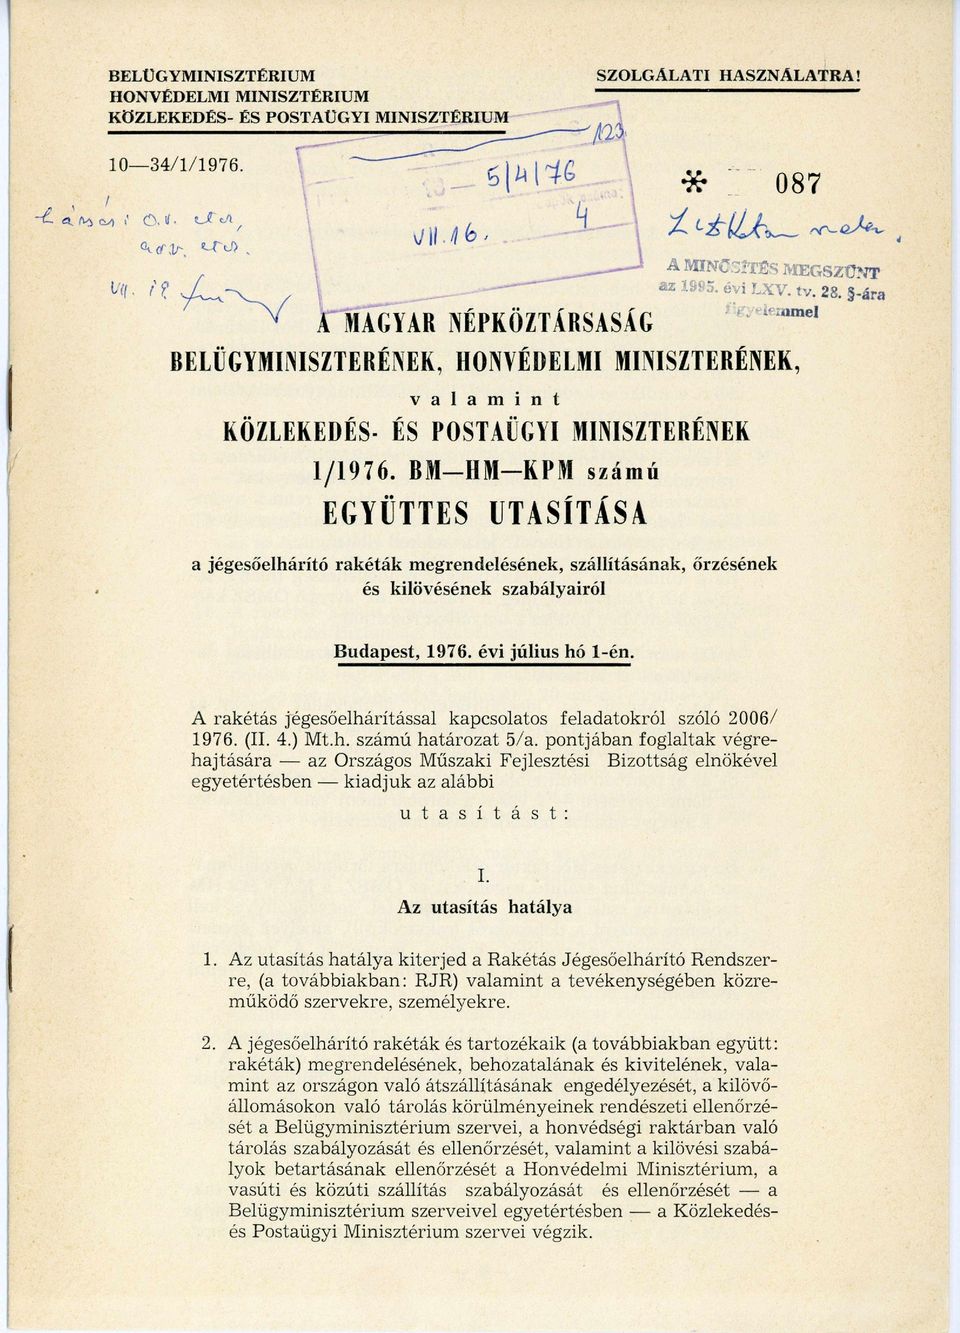 BM HM KPM s z á m ú EGYÜTTES UTASÍTÁSA a jégesőelhárító rakéták megrendelésének, szállításának, őrzésének és kilövésének szabályairól Budapest, 1976. évi július hó 1-én.